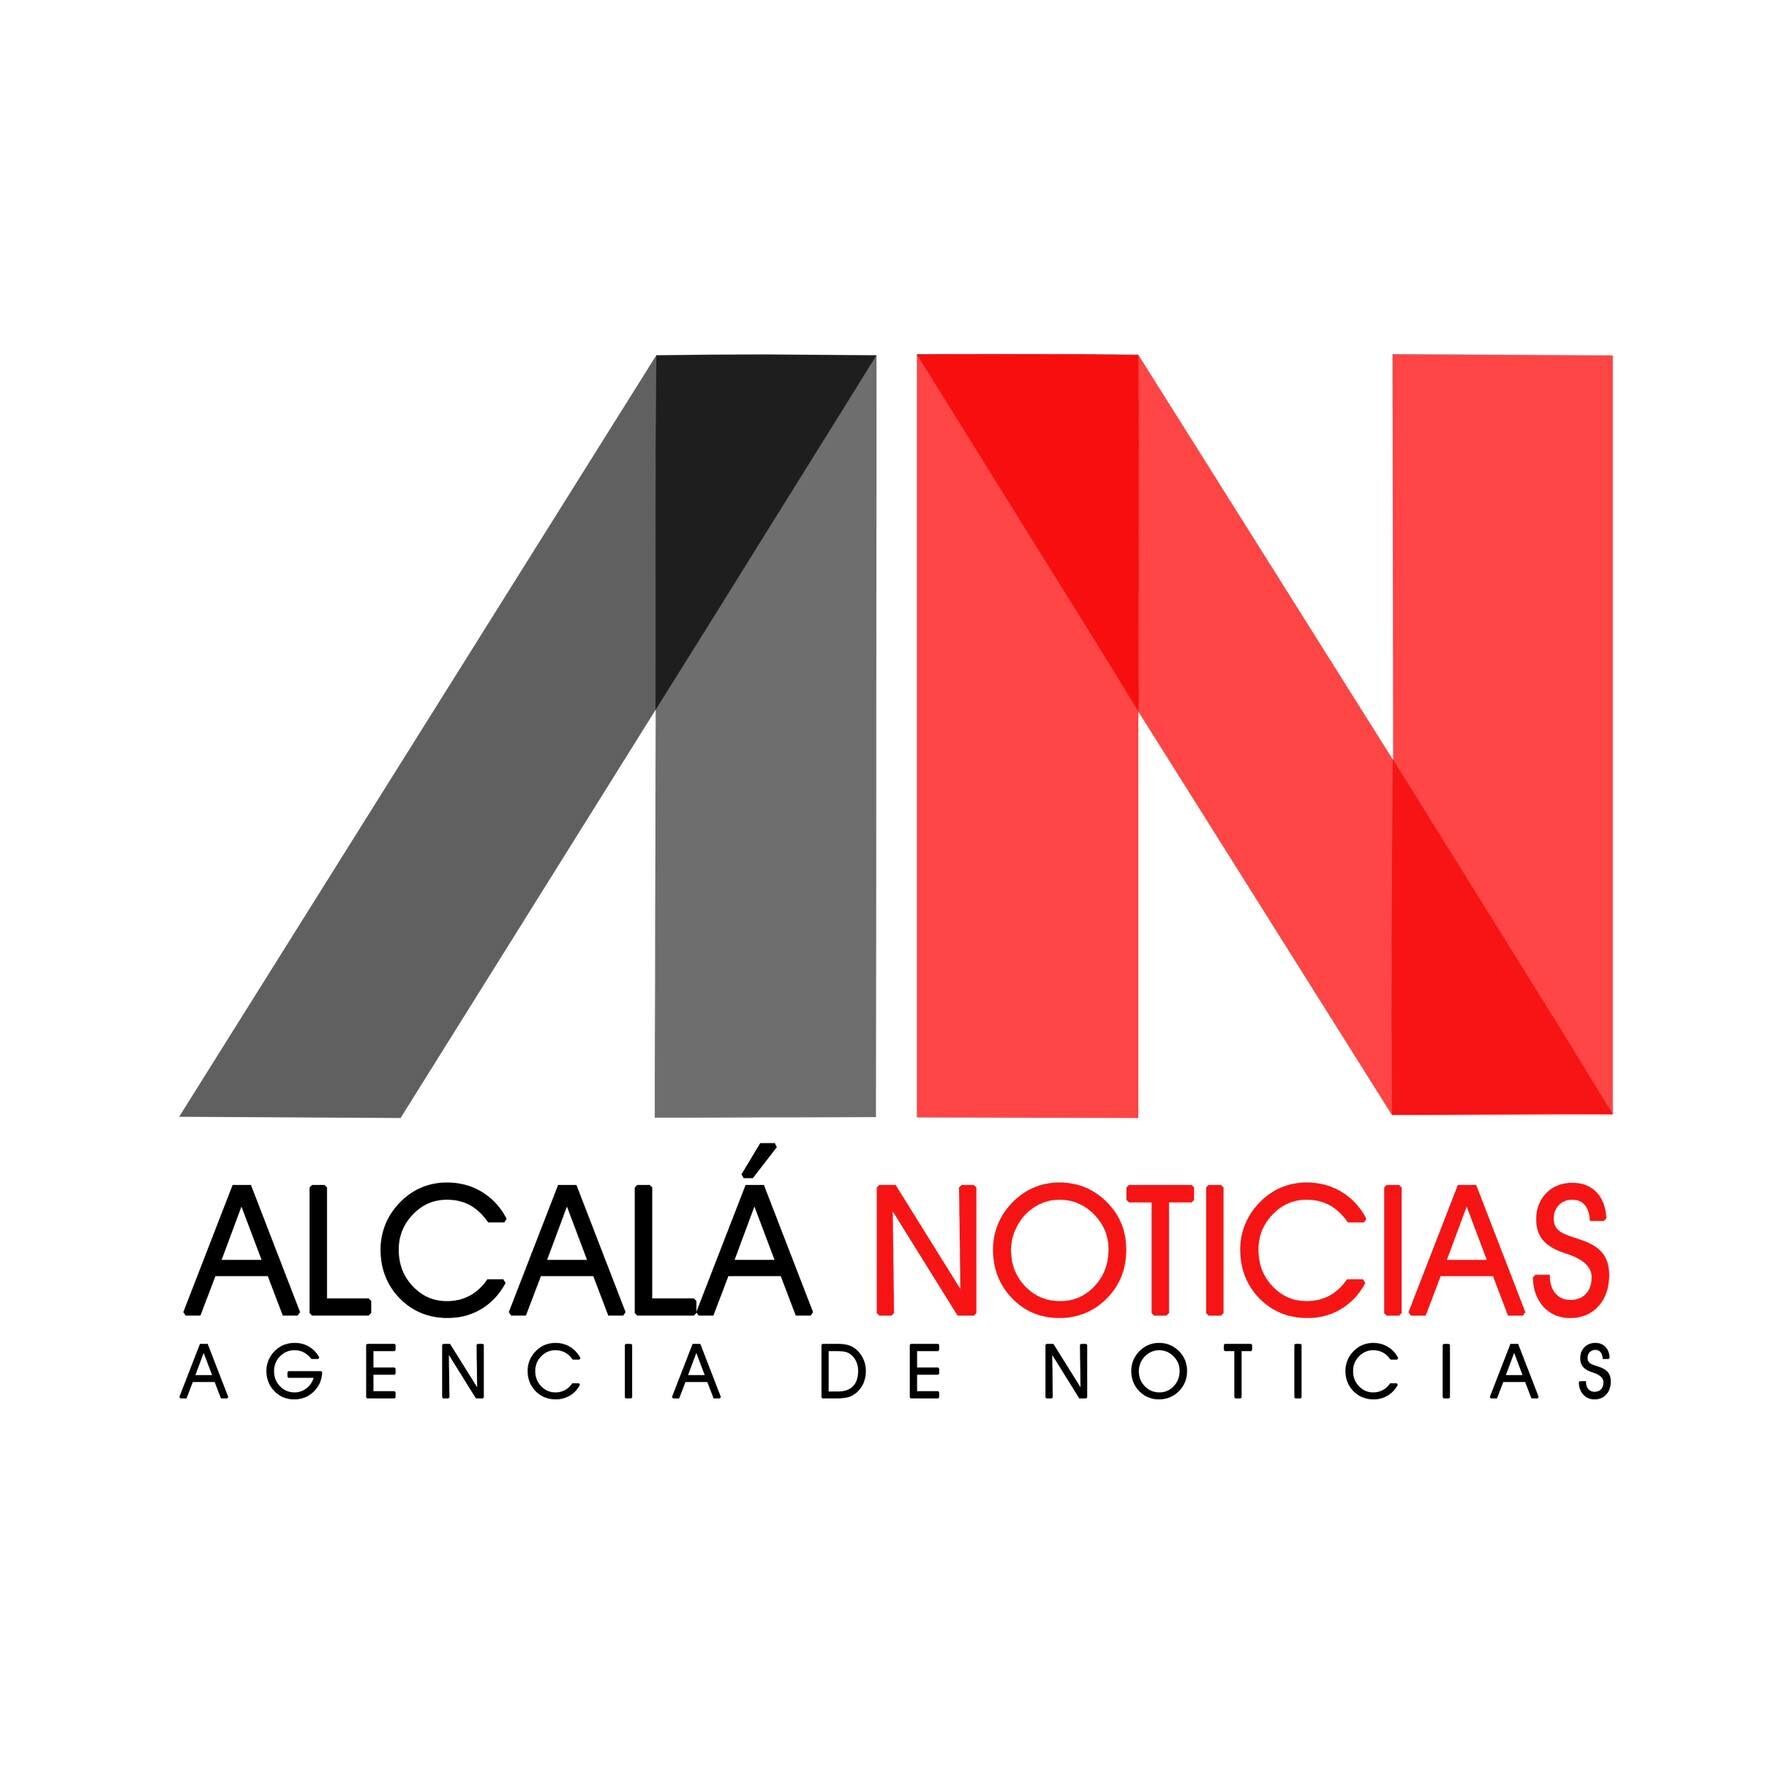 Alcalá Noticias